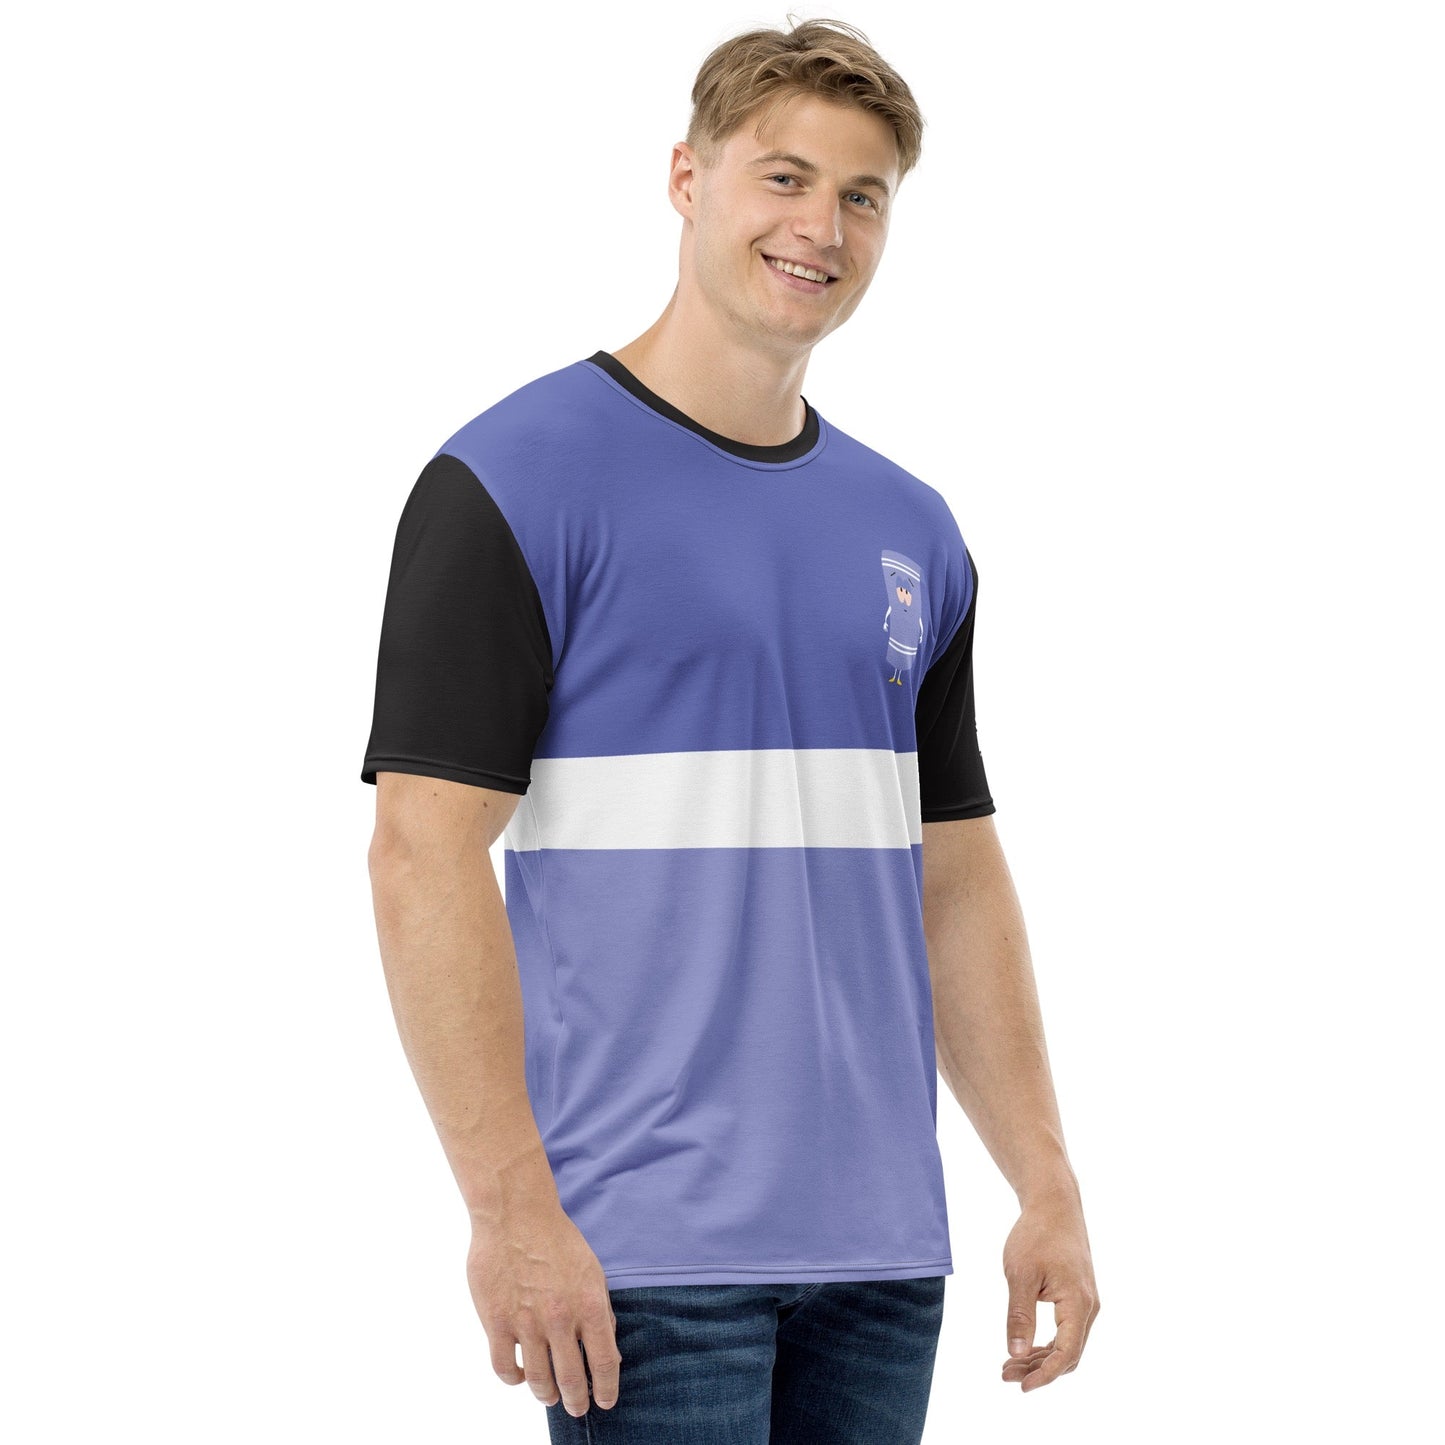 South Park Towelie Color Block Unisex Short Sleeve T - Shirt - Paramount Shop